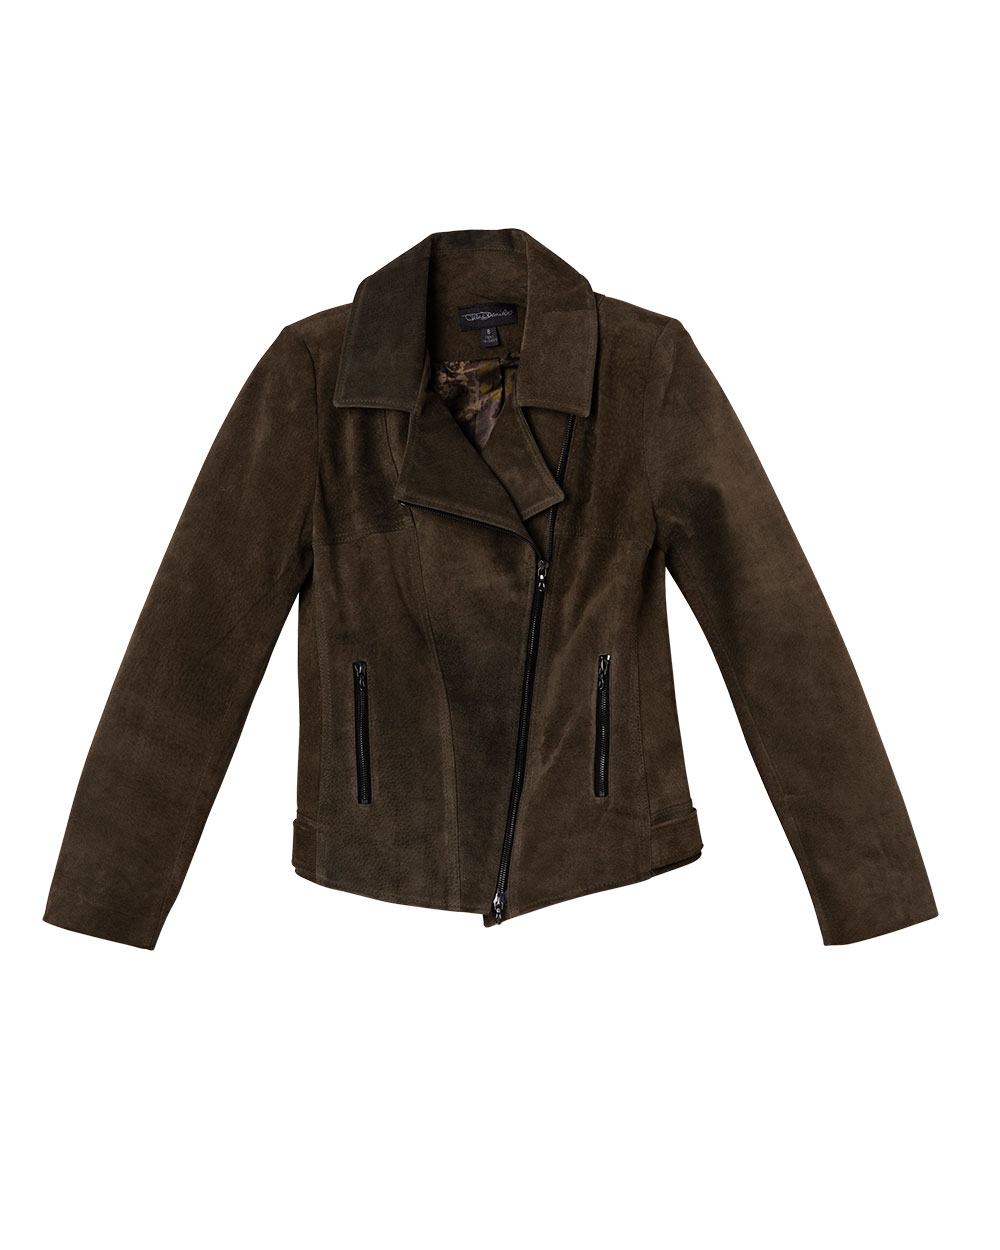 Jane Daniels jacket, $1399